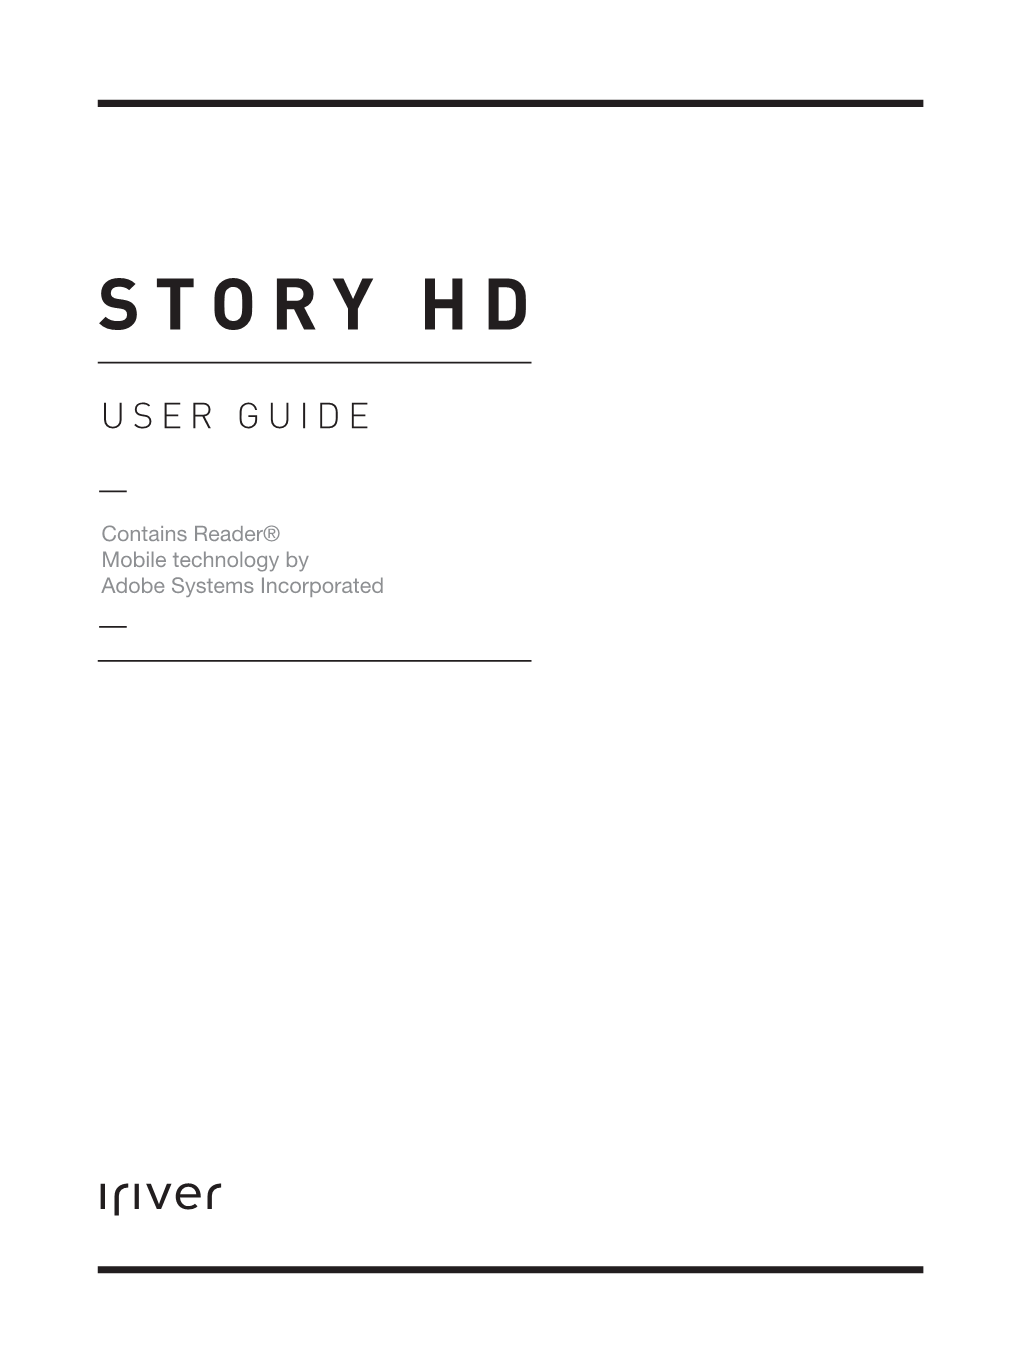 Iriver Story HD Manual